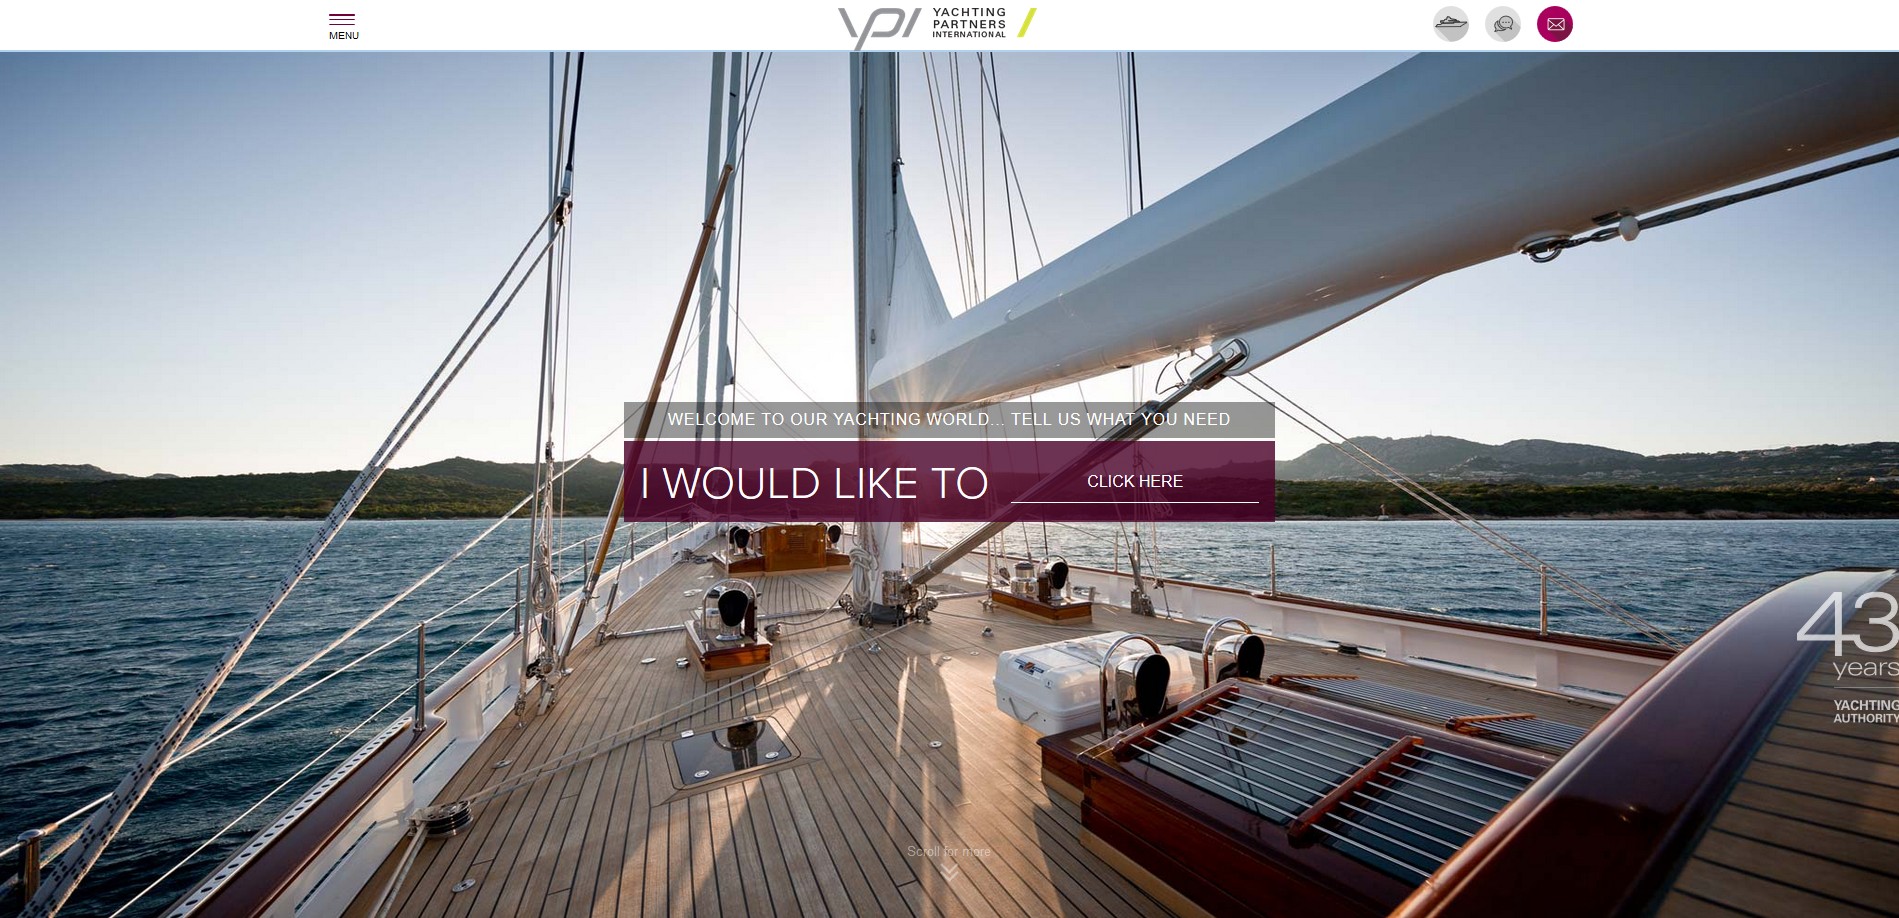 Un prestigieux site internet de yachting et de nautisme